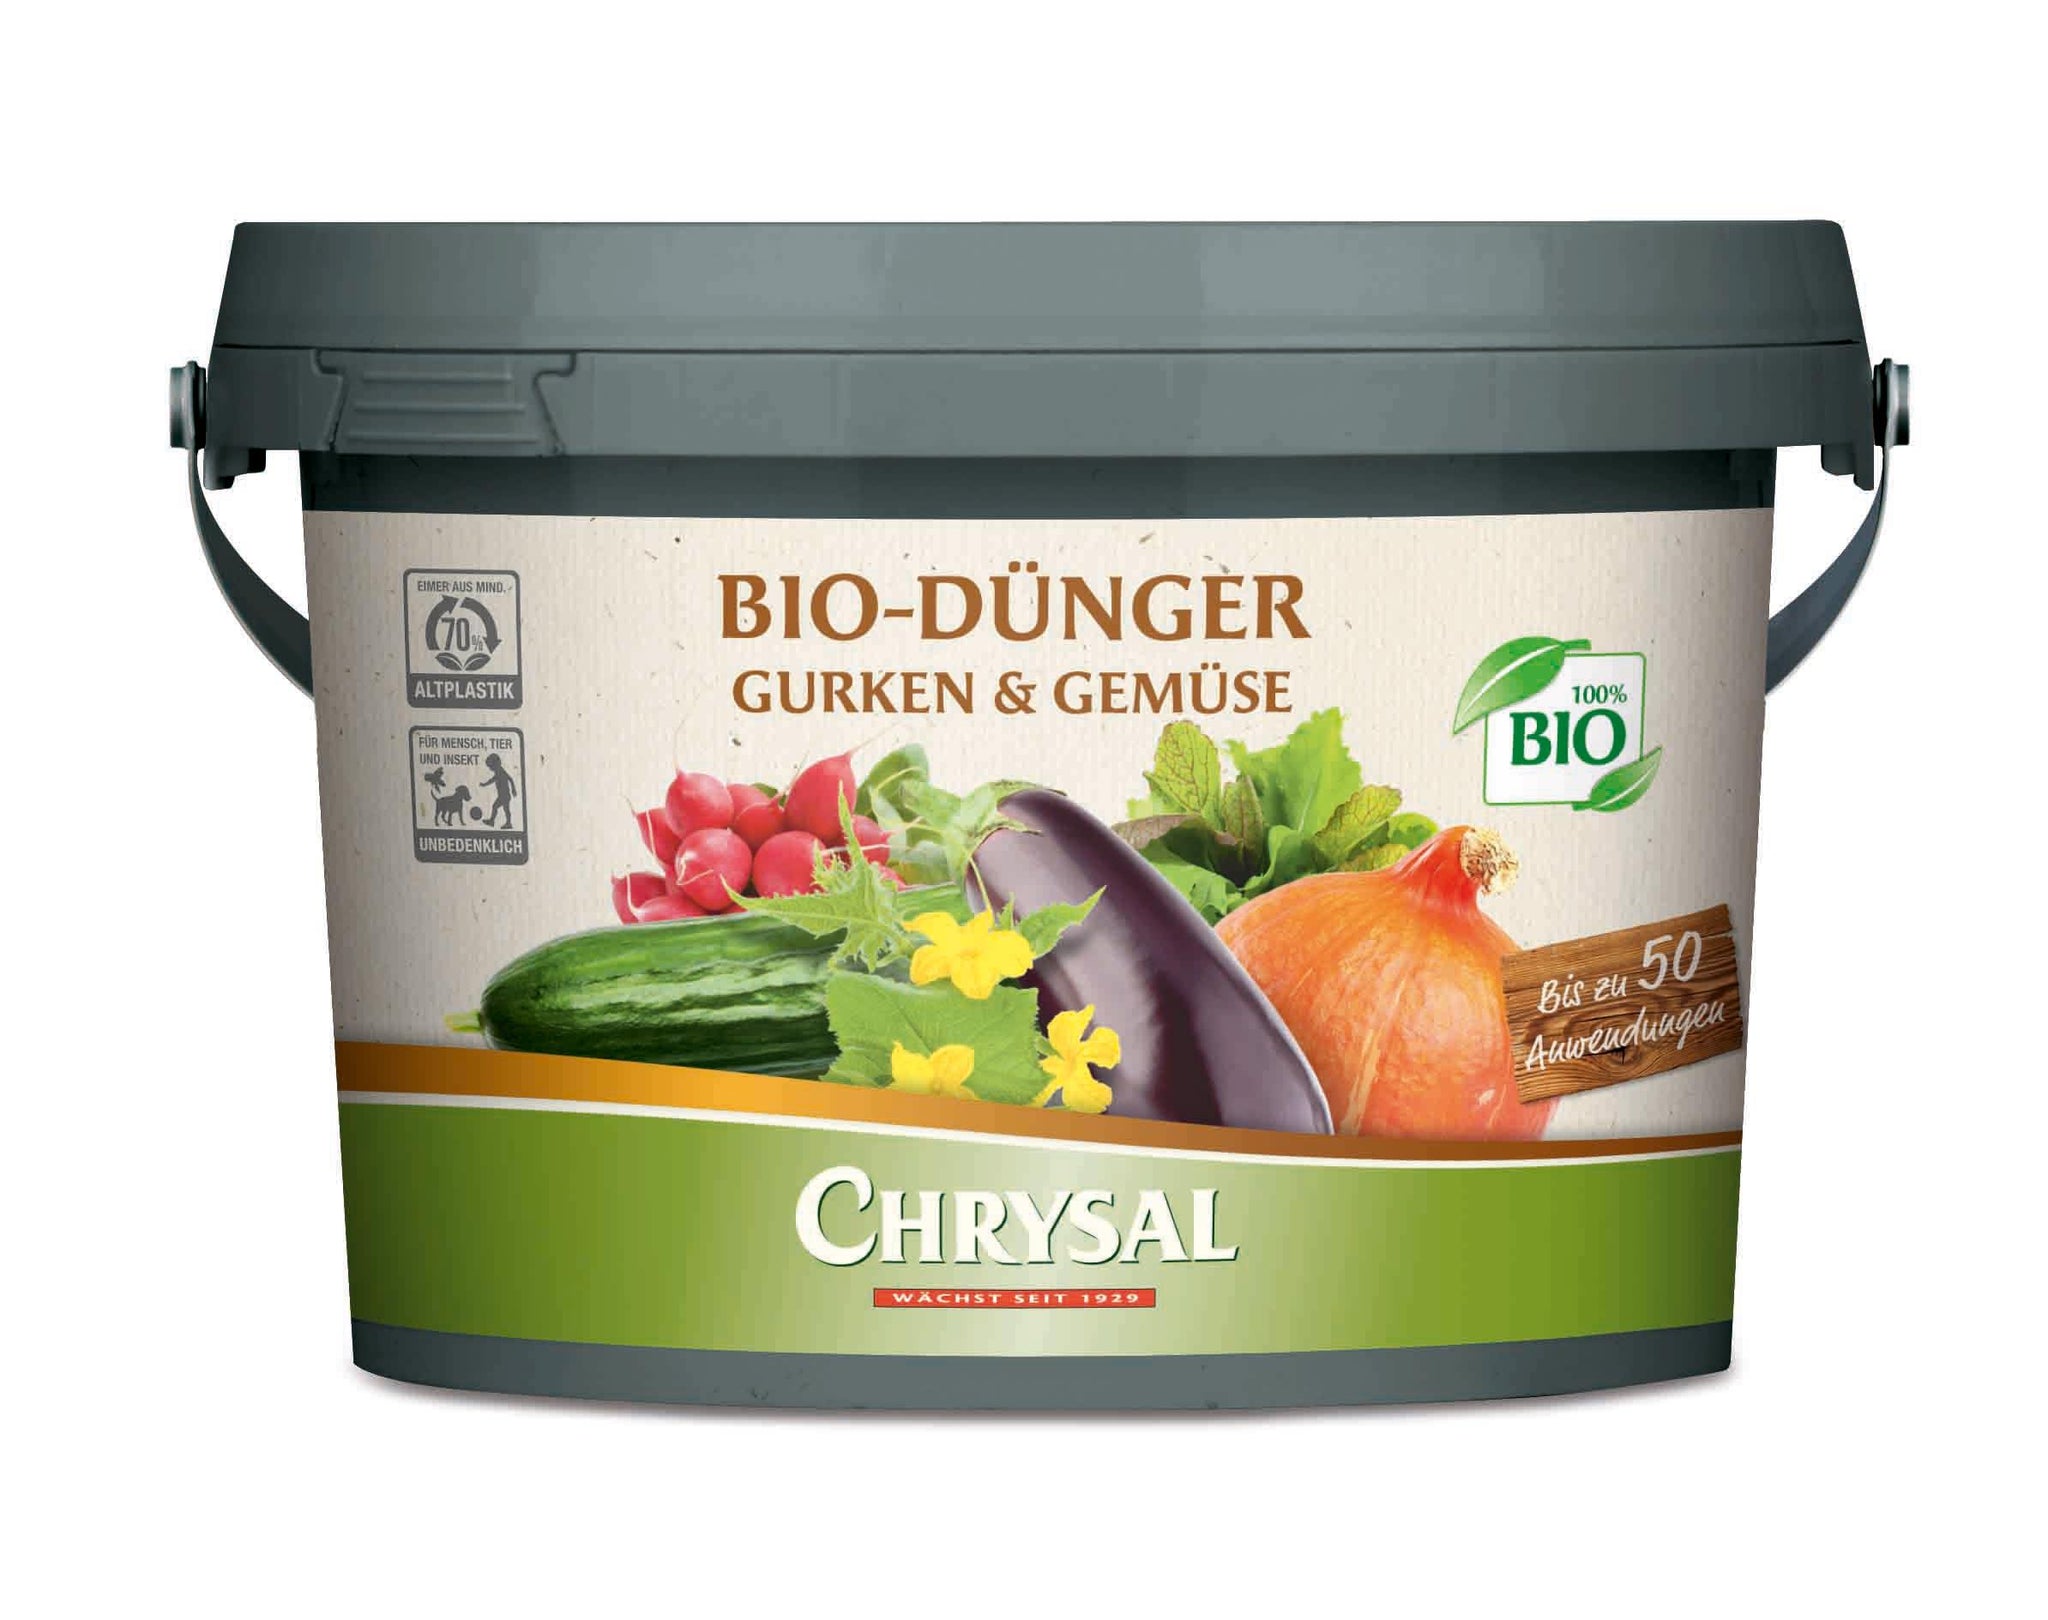 Bio-Dünger Gurken & Gemüse 1 kg Chrysal